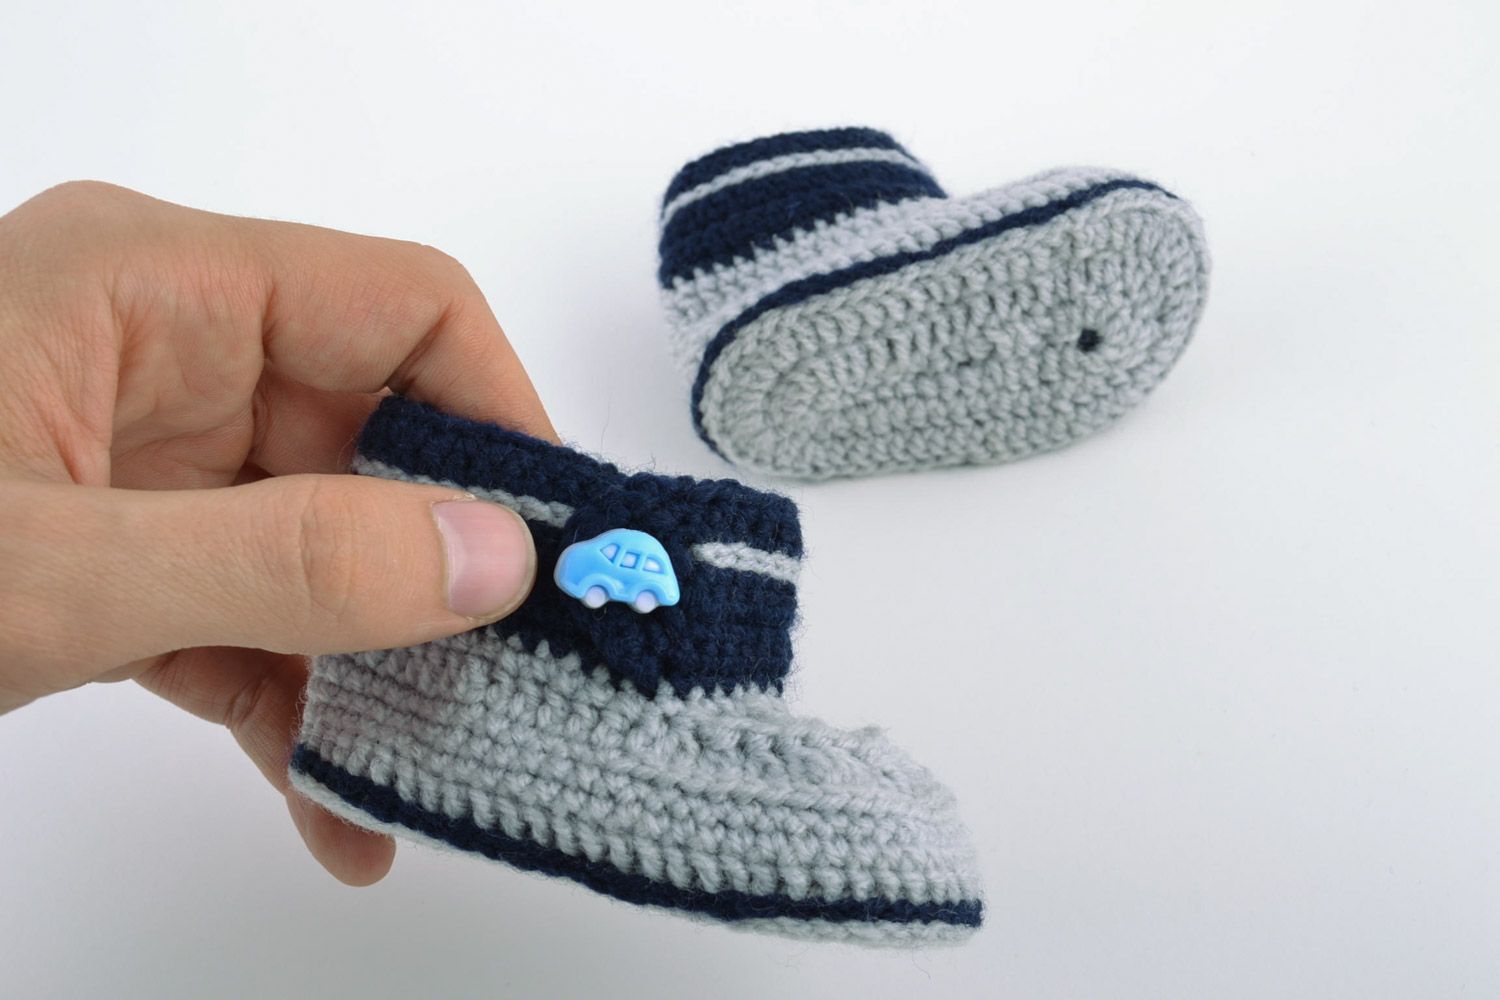 Petucos de bebé con forma de zapatitos artesanales de lana grises azules foto 2